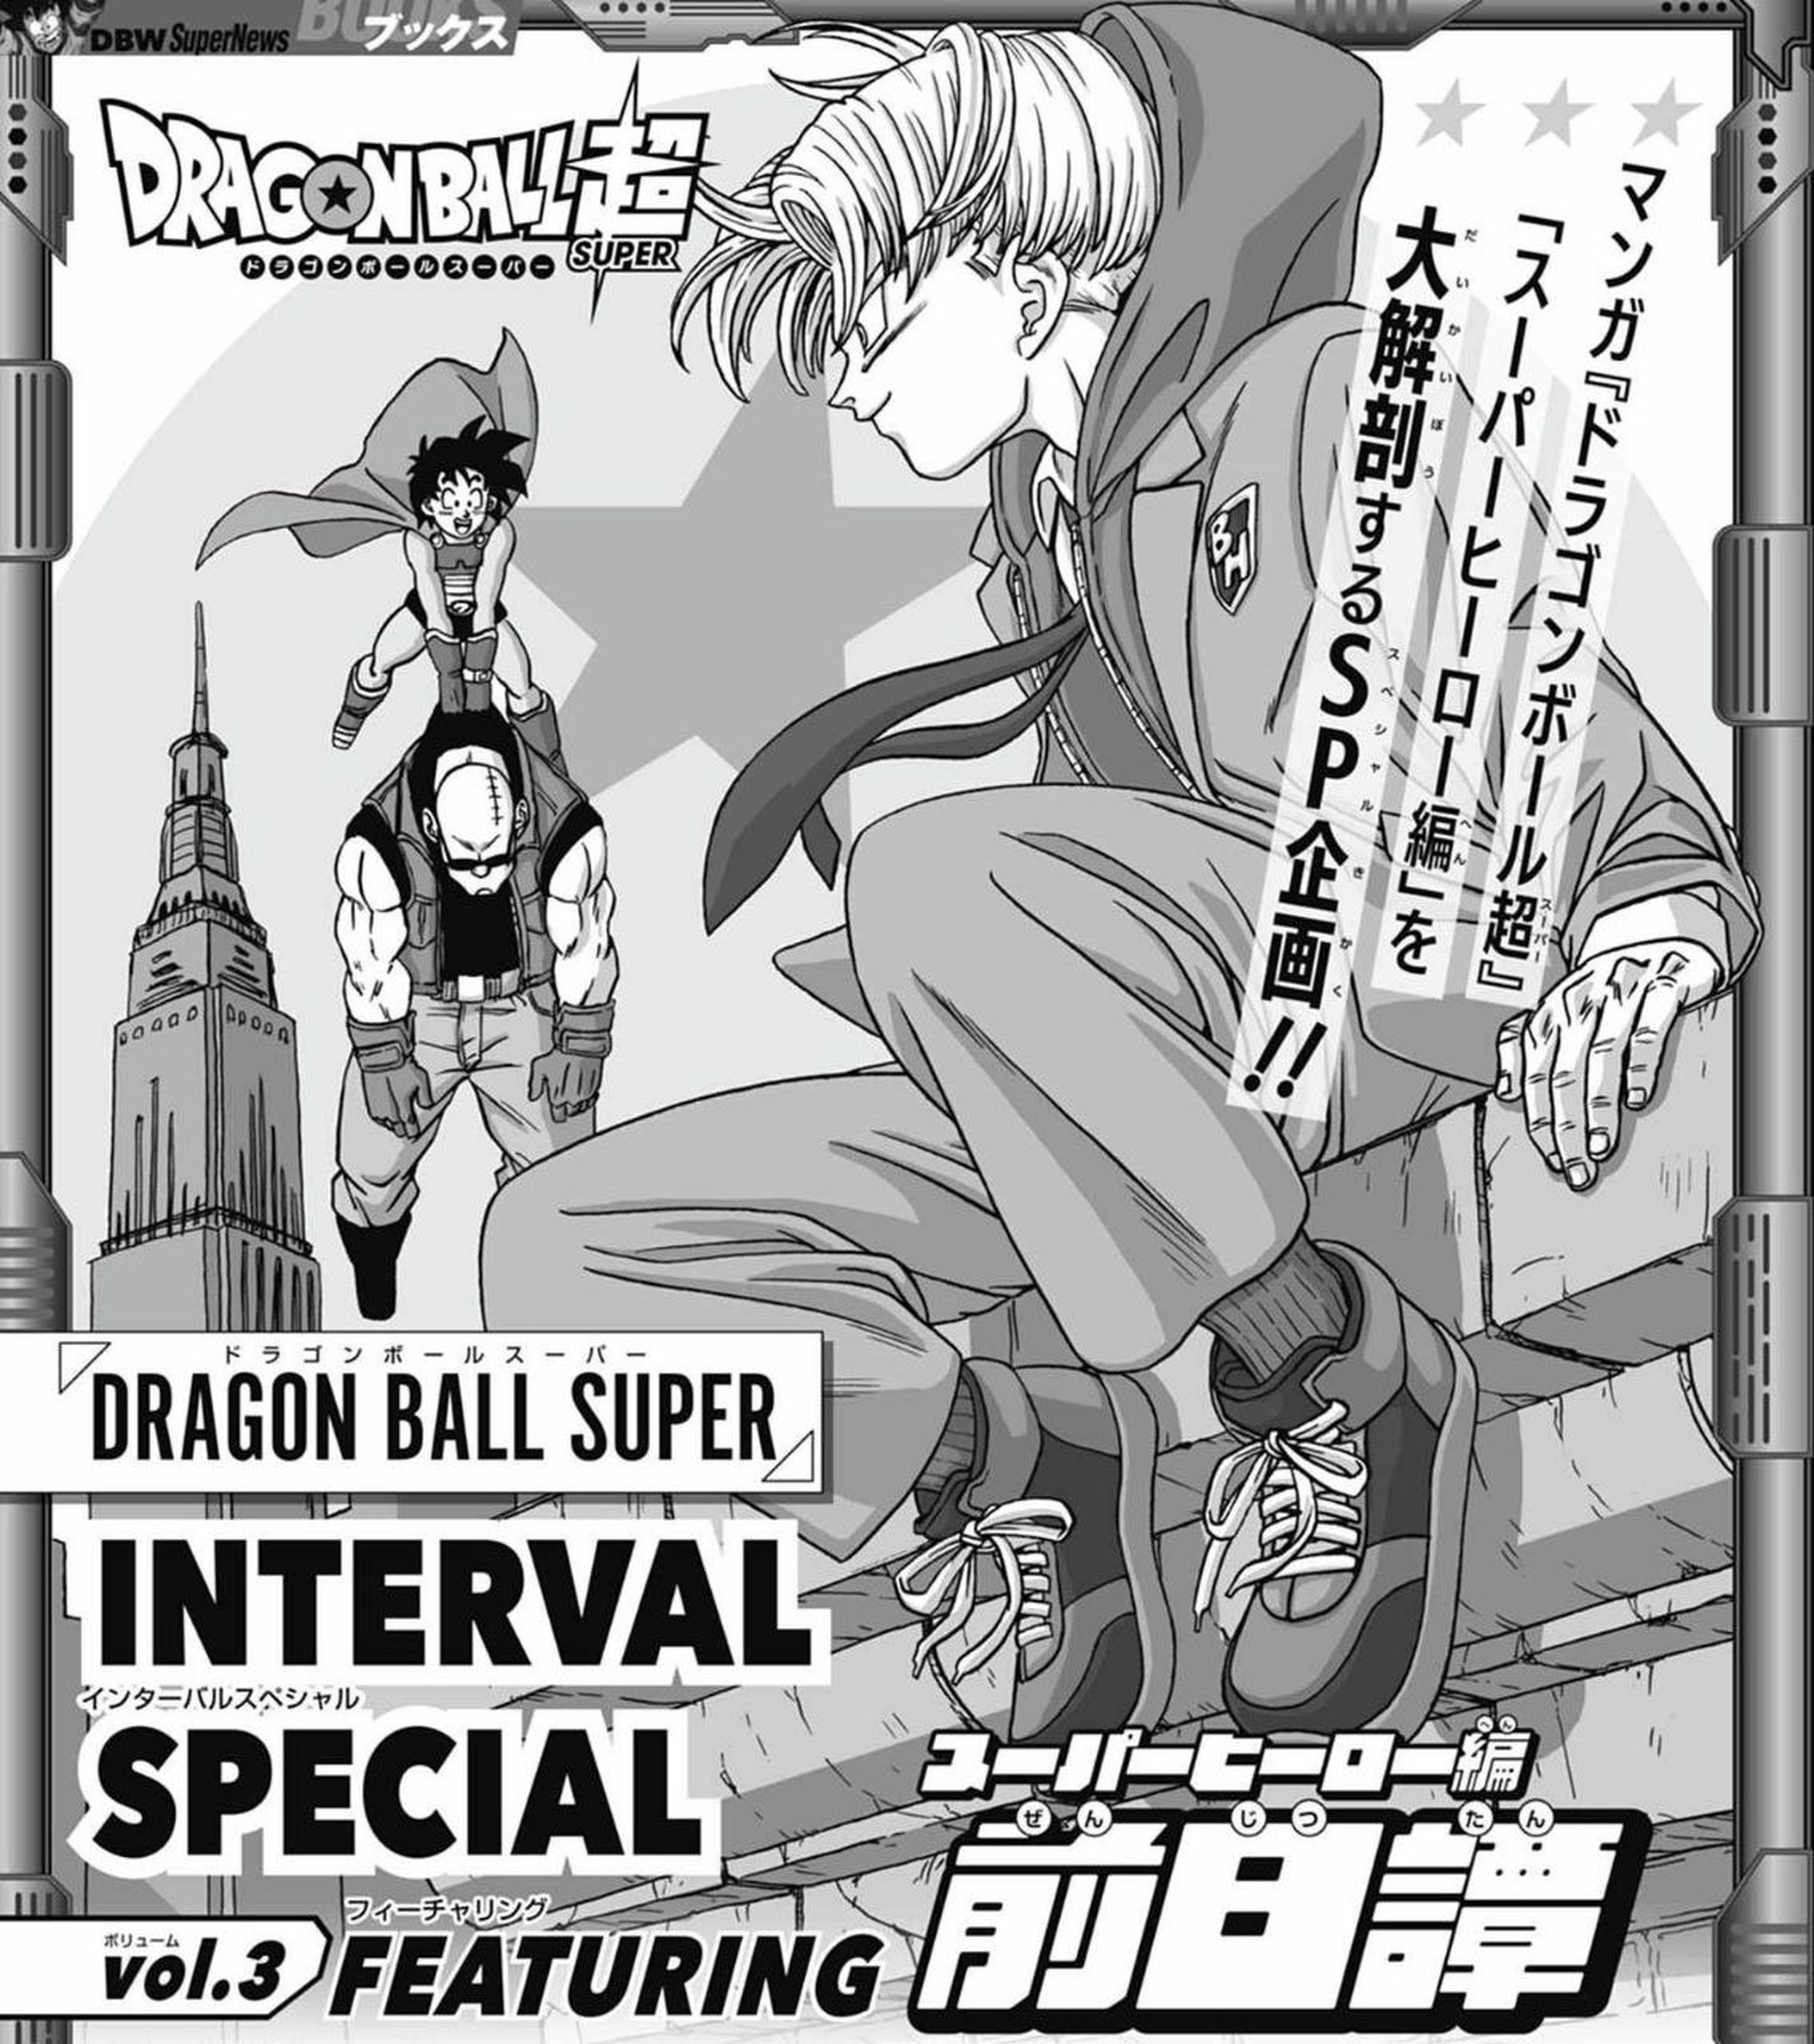 Toyotaro dibuja una nueva ilustración de Goten y Trunks adolescentes ambientada en la última saga de Dragon Ball Super publicada hasta la fecha